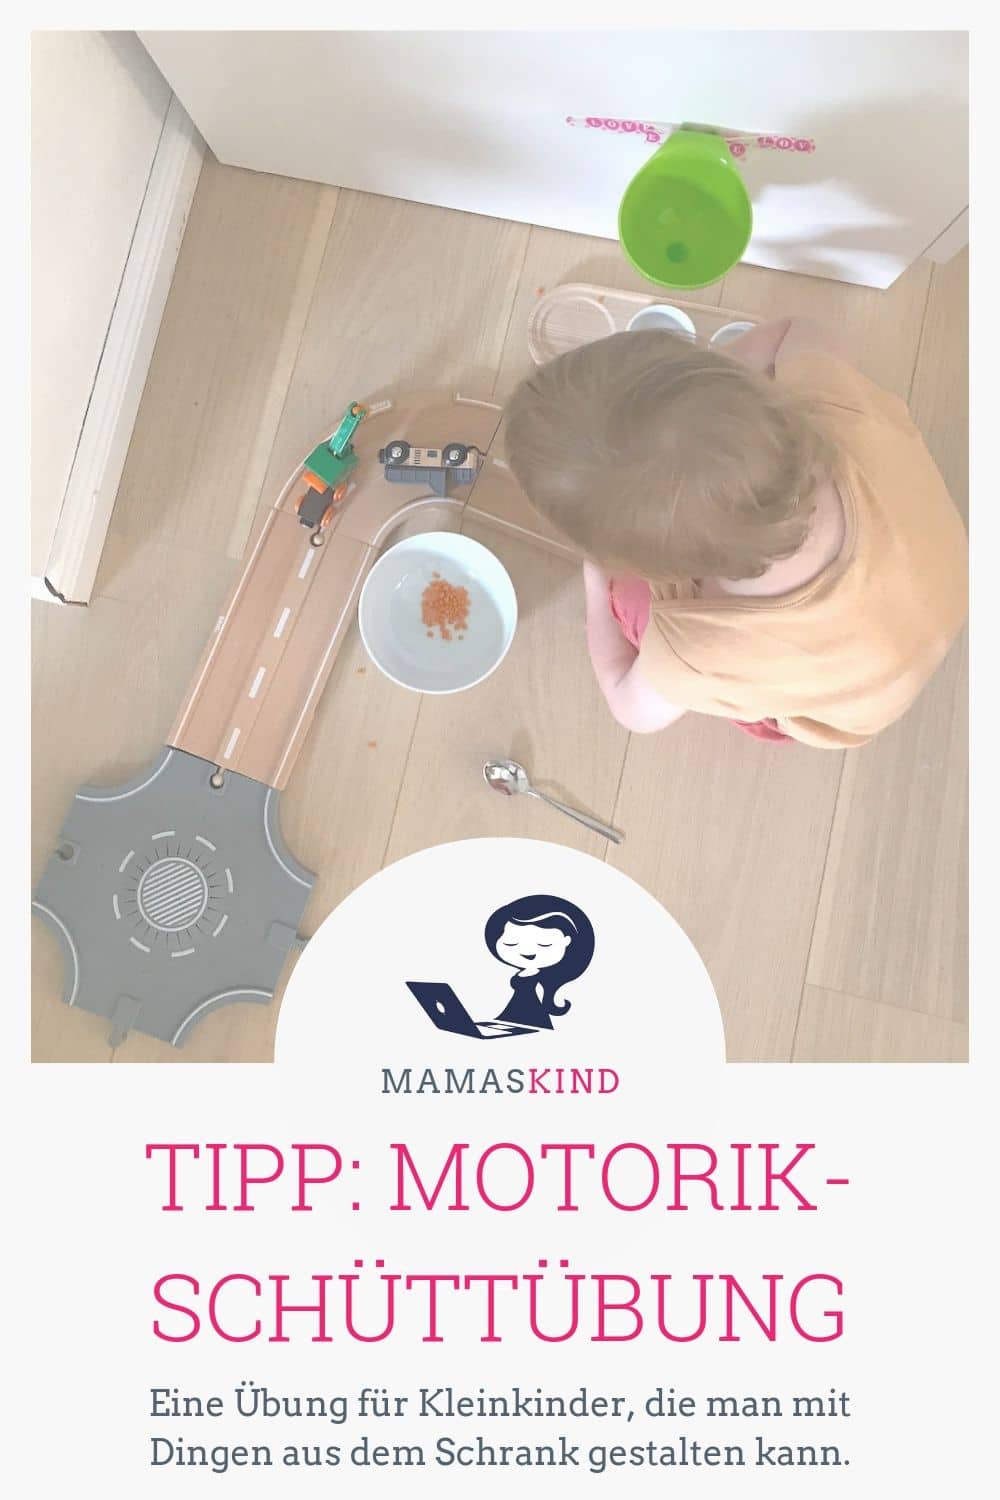 Motorik-Schüttübung für Kleinkinder mit Linsen und Trichter - Mehr Tipps zur Kinderbeschäftigung auf Mamaskind.de